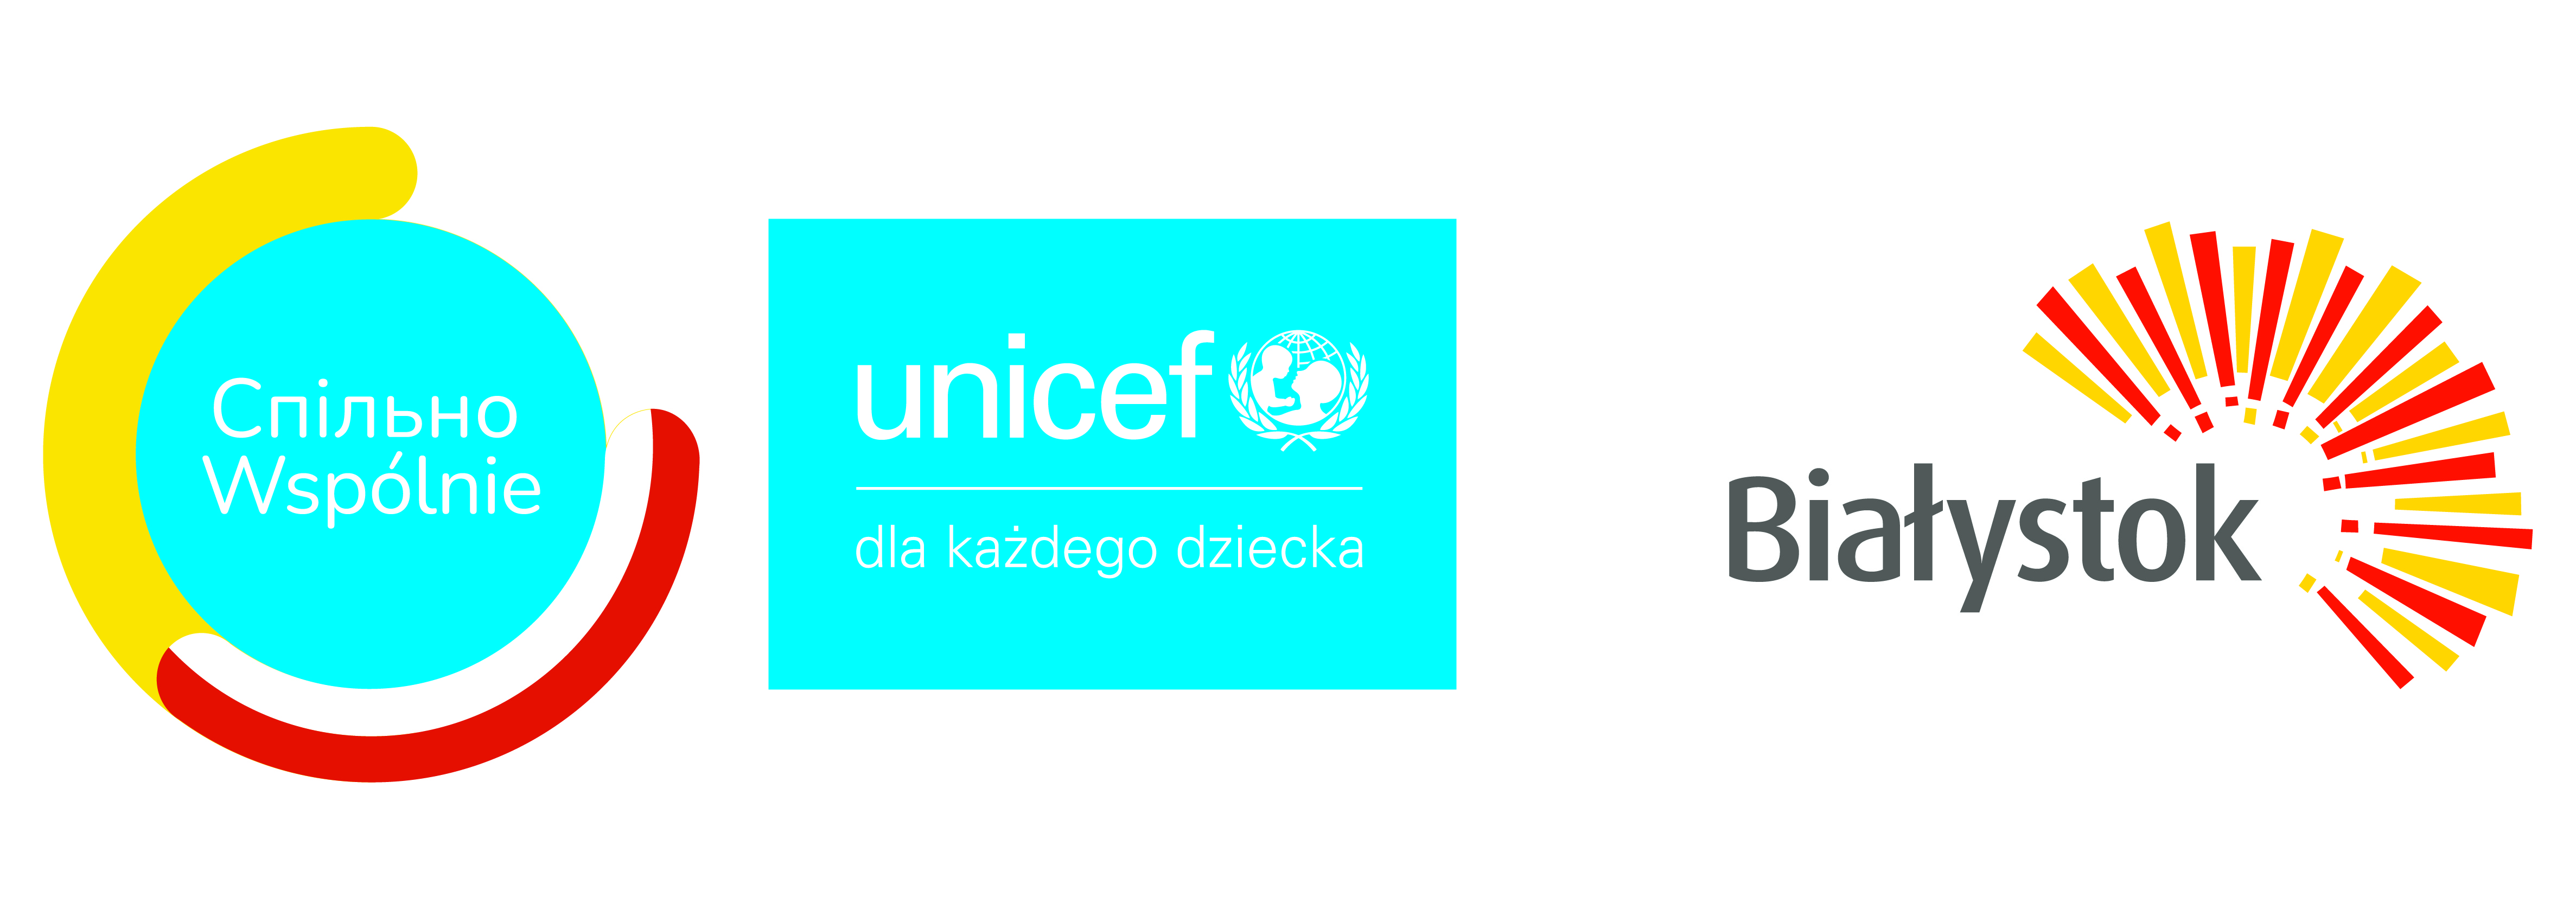 logo unicef.jpg